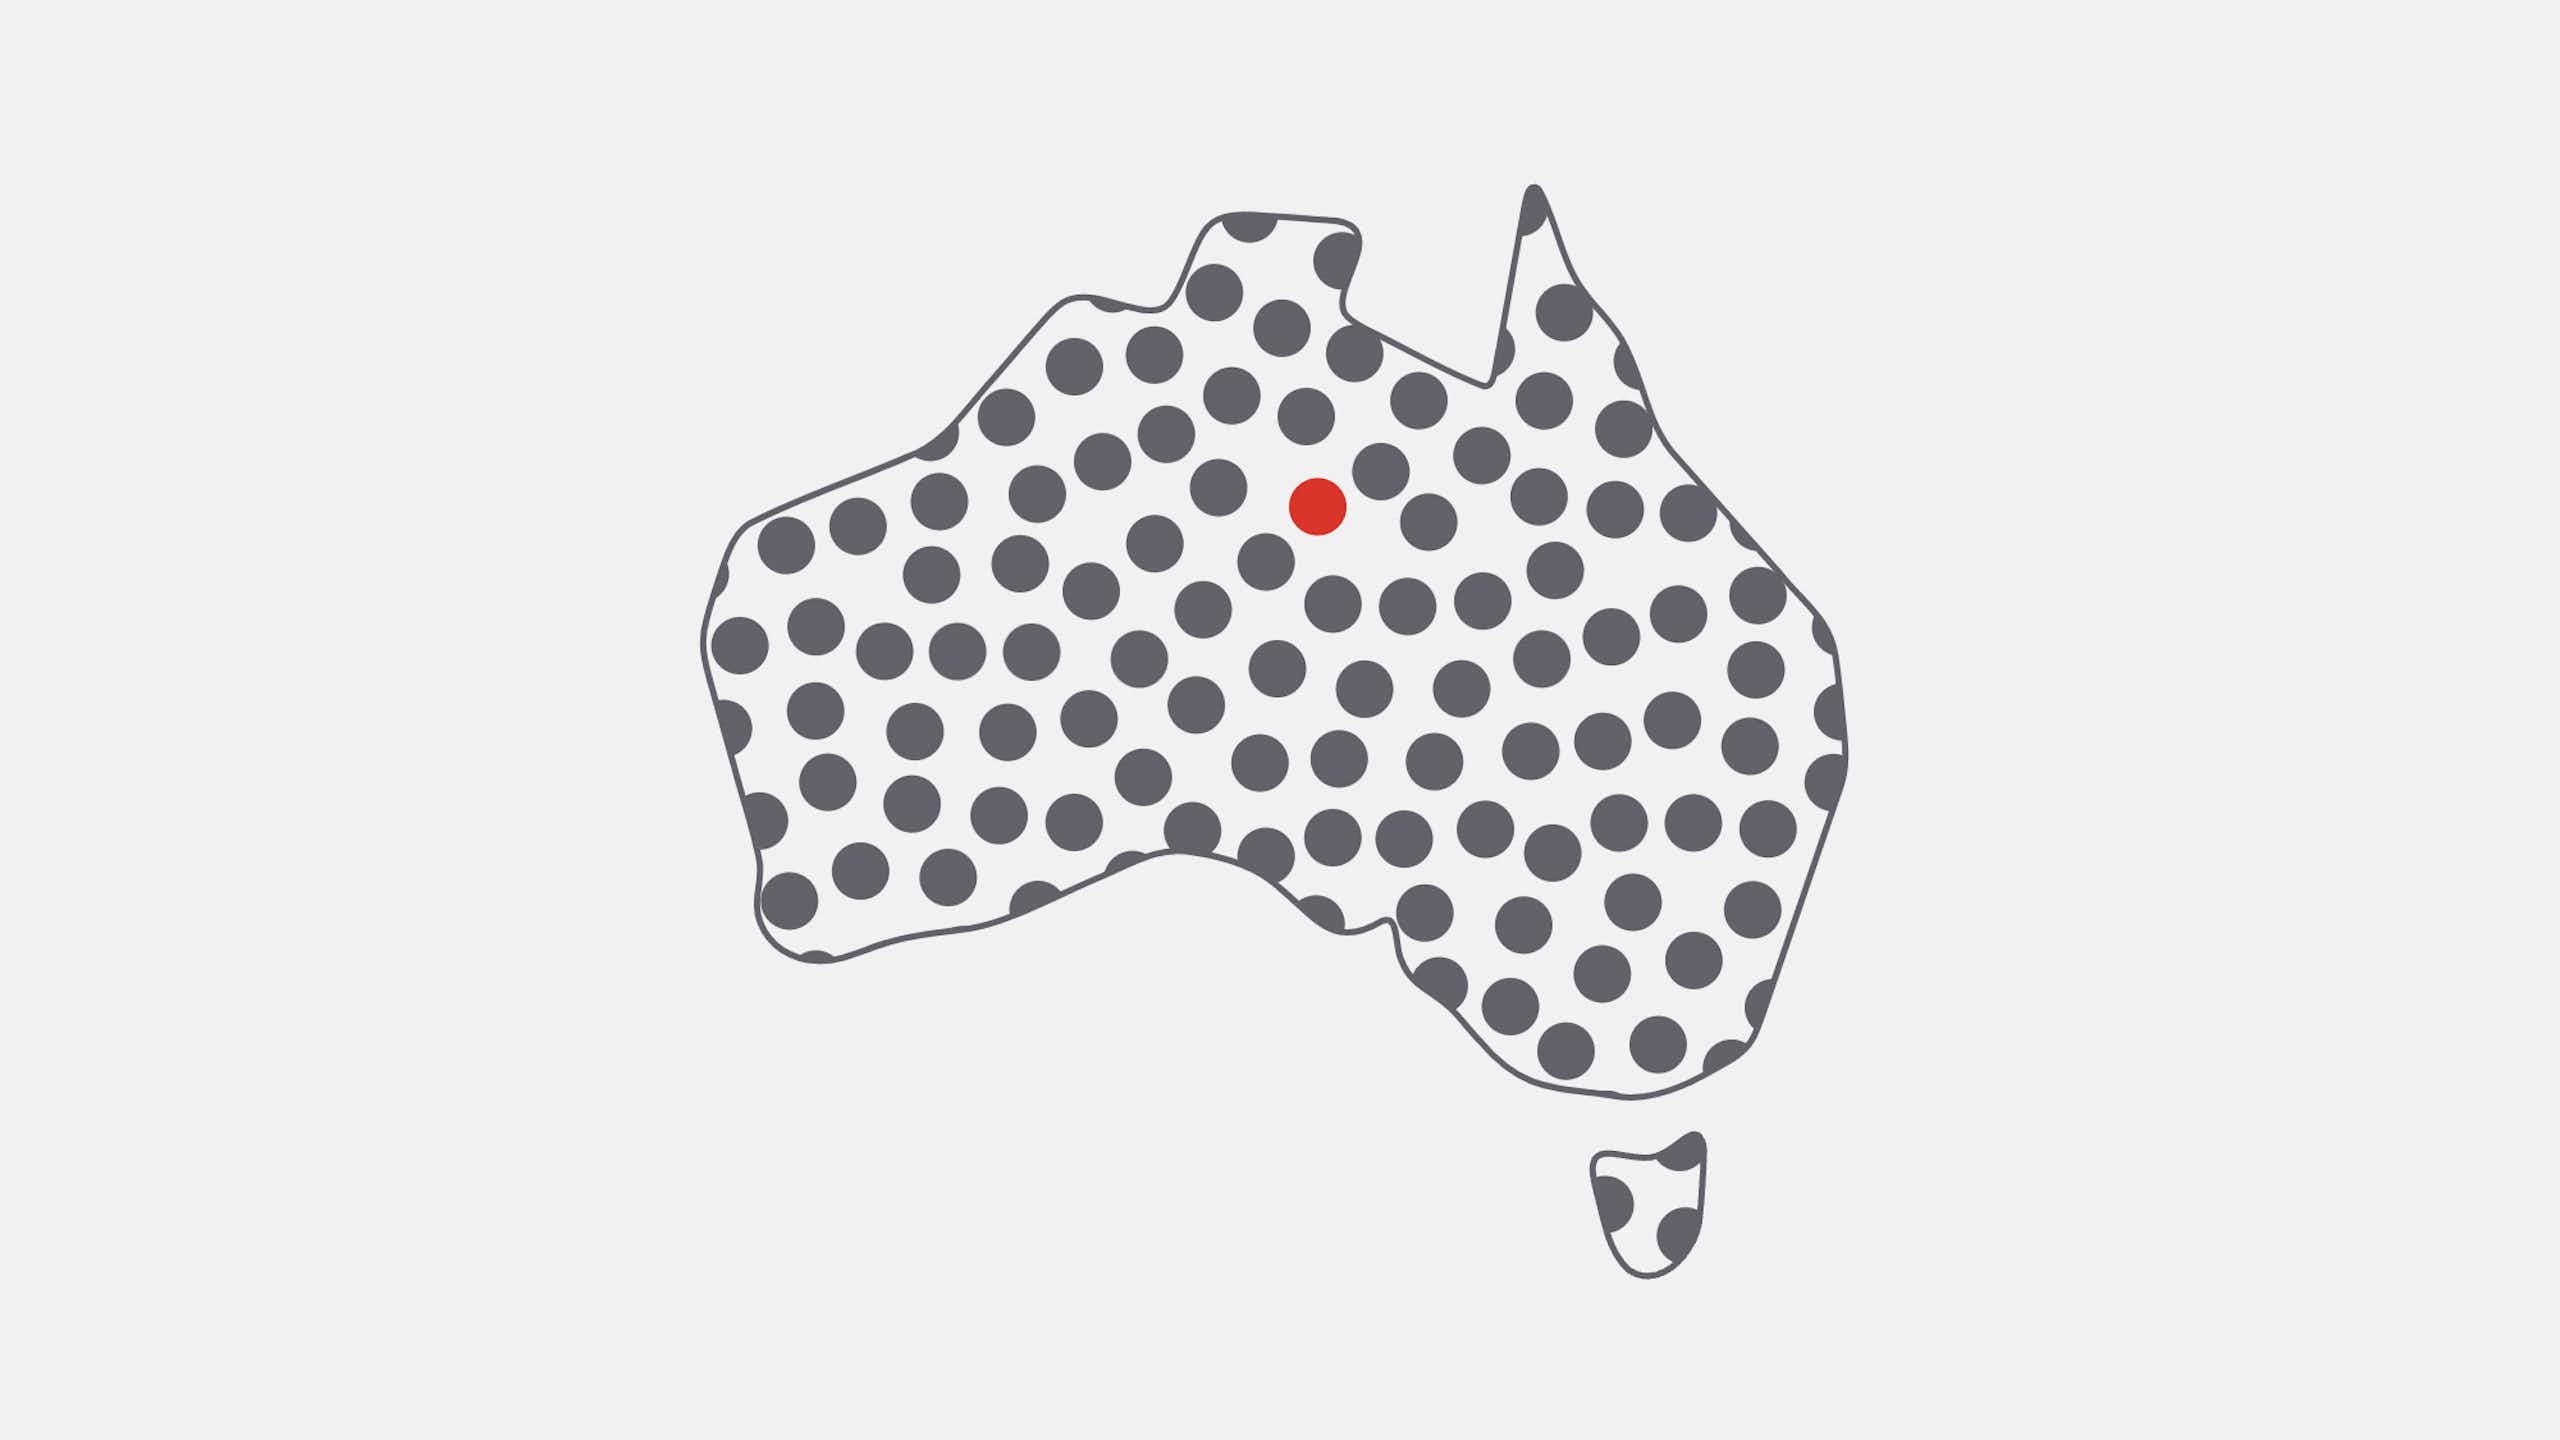 Australia icon with circles